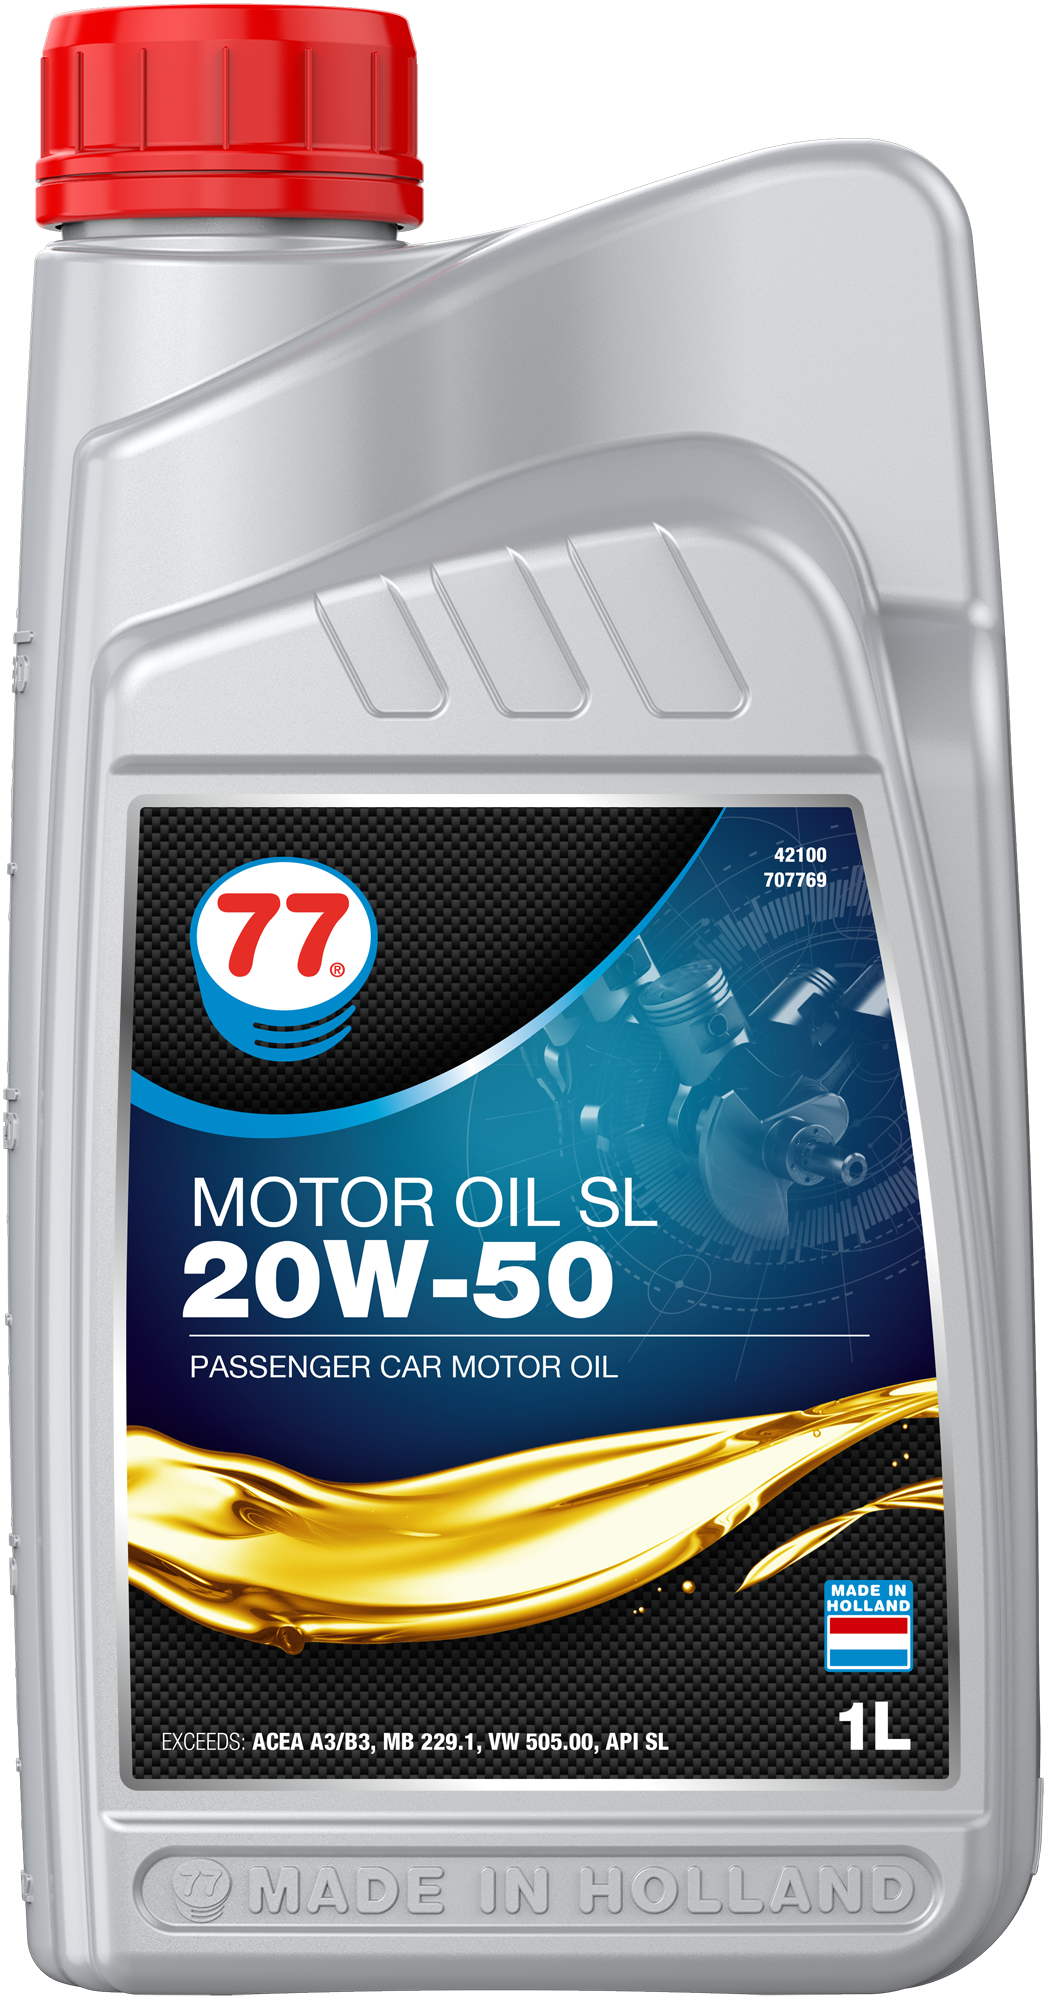 OUT0138-4210-1D2017 Motor Oil SL 20W-50 is een krachtige minerale motorolie die geschikt is voor benzine-, LPG- en dieselmotoren in moderne personenauto's en lichte bestelwagens met of zonder turbo's.